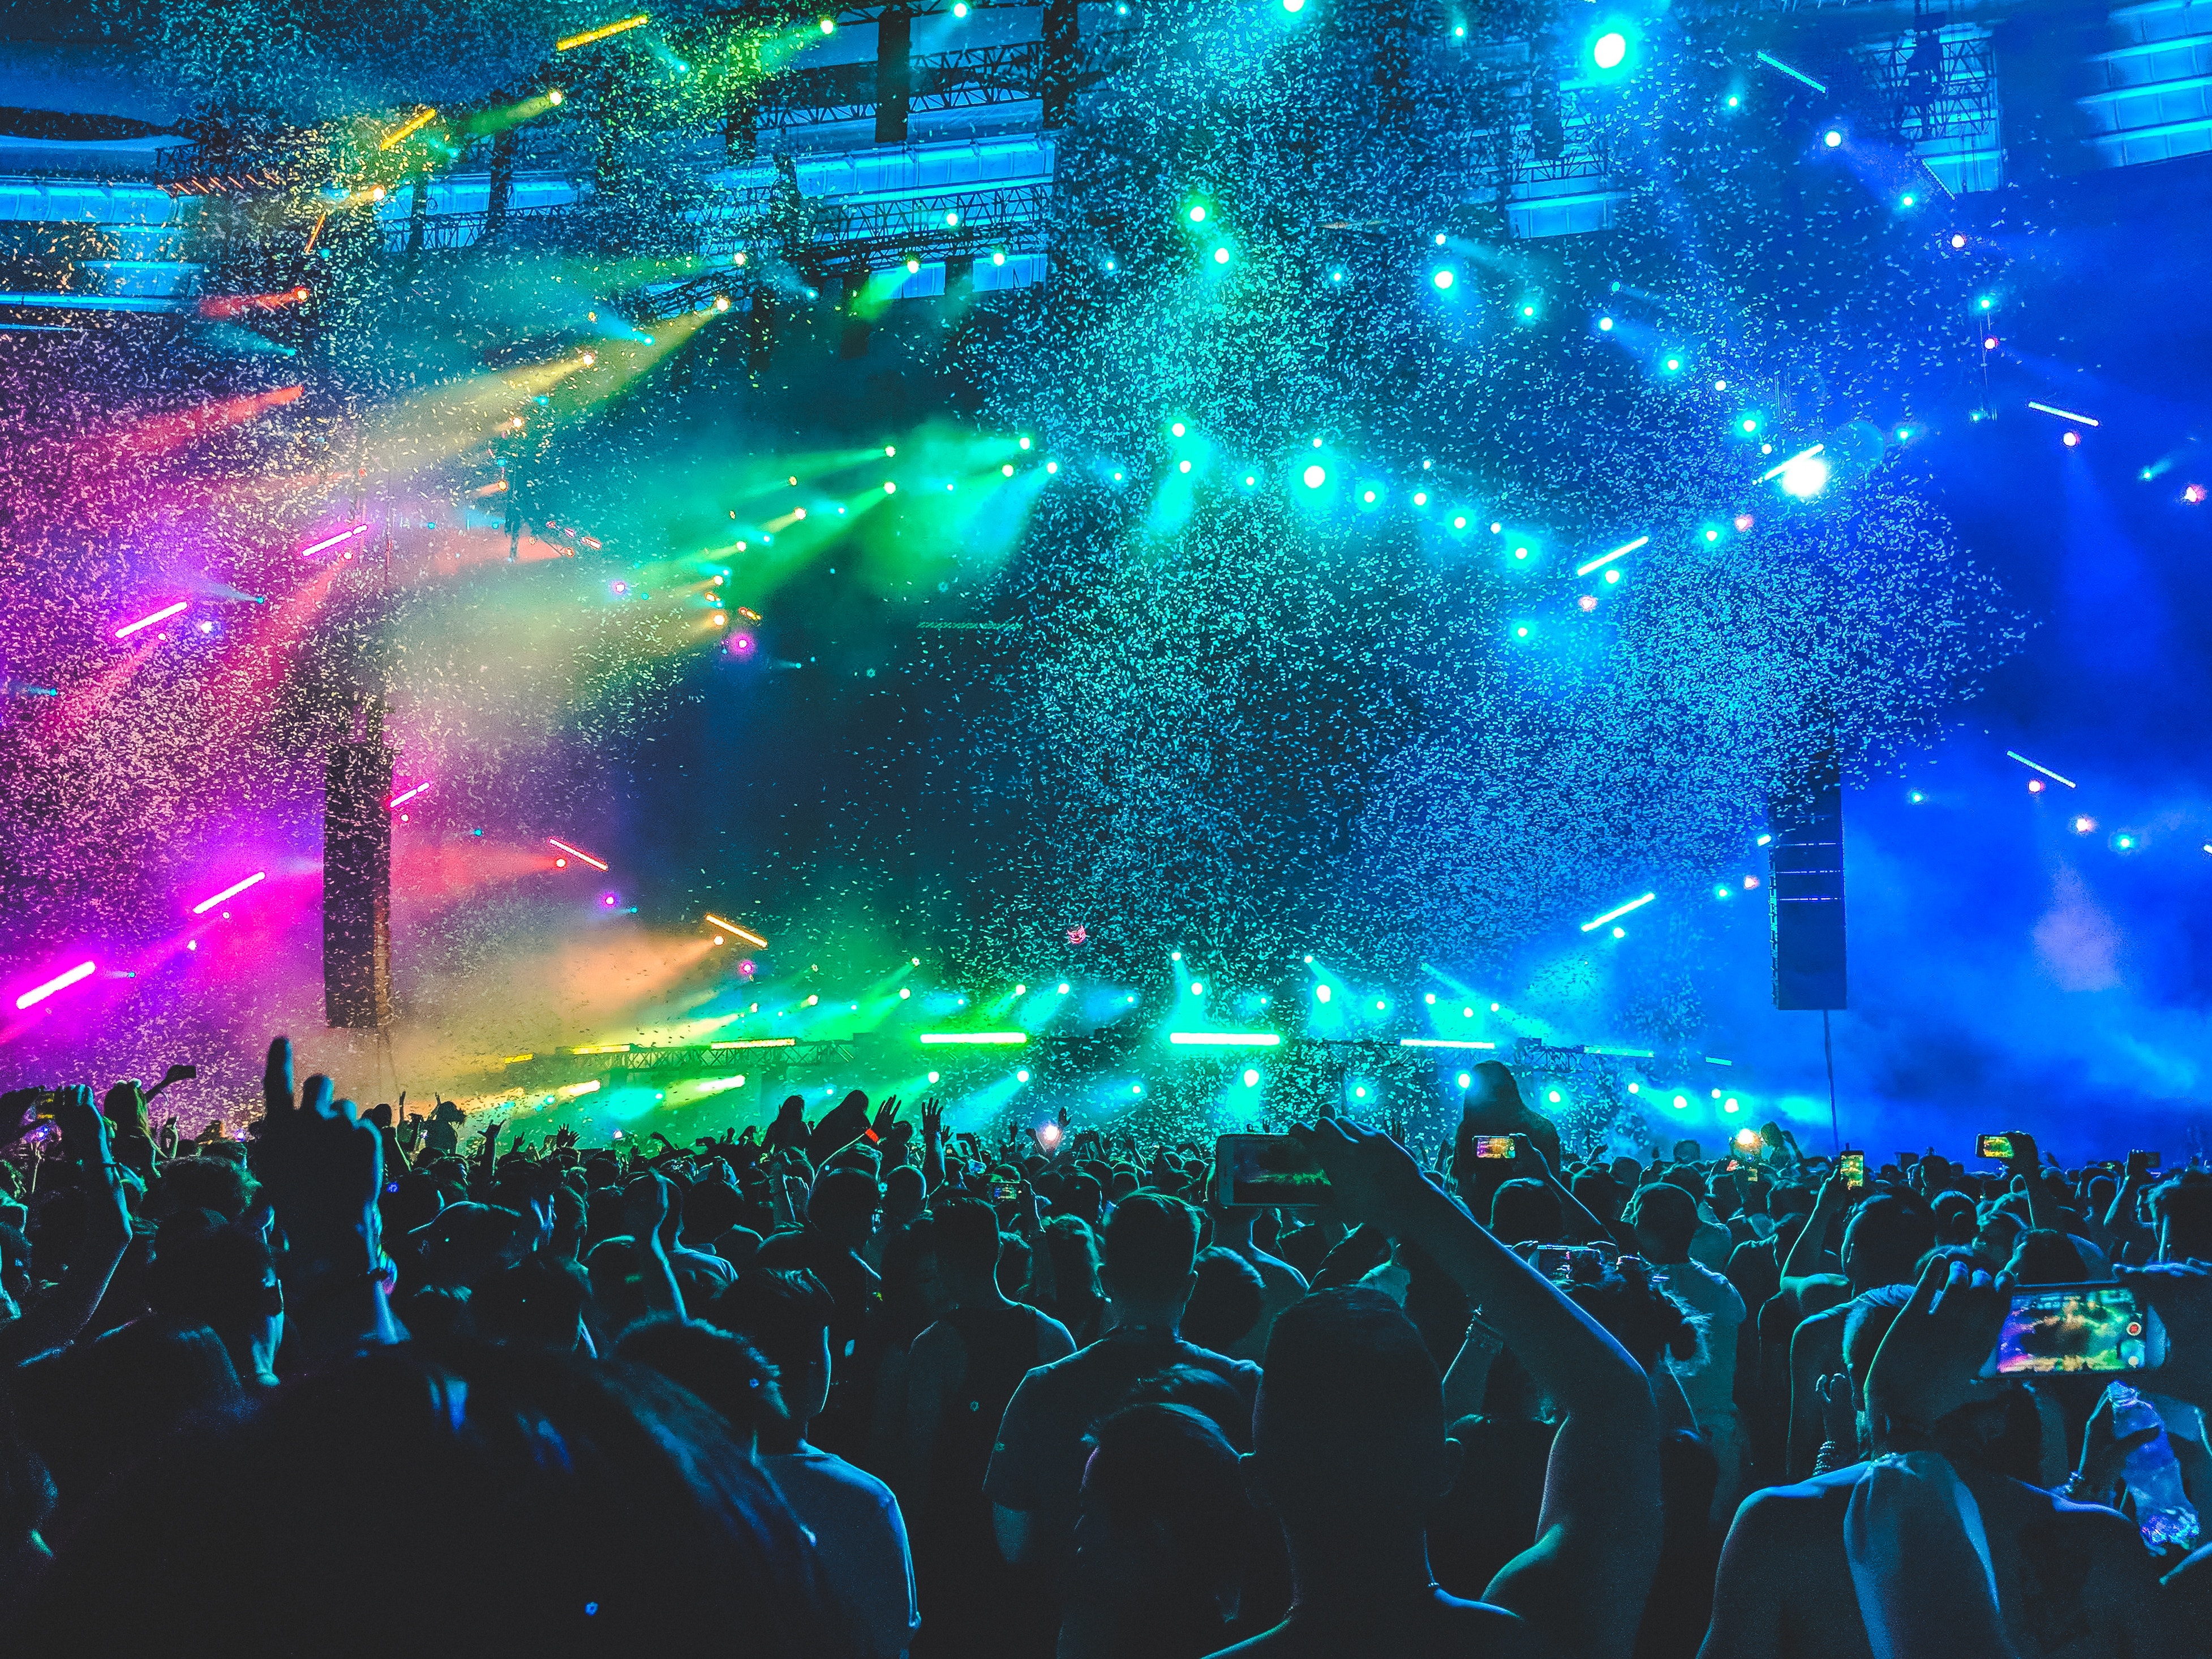 Stor konsertscene med konfetti og masse lys, tatt fra punlikumsperspektiv.